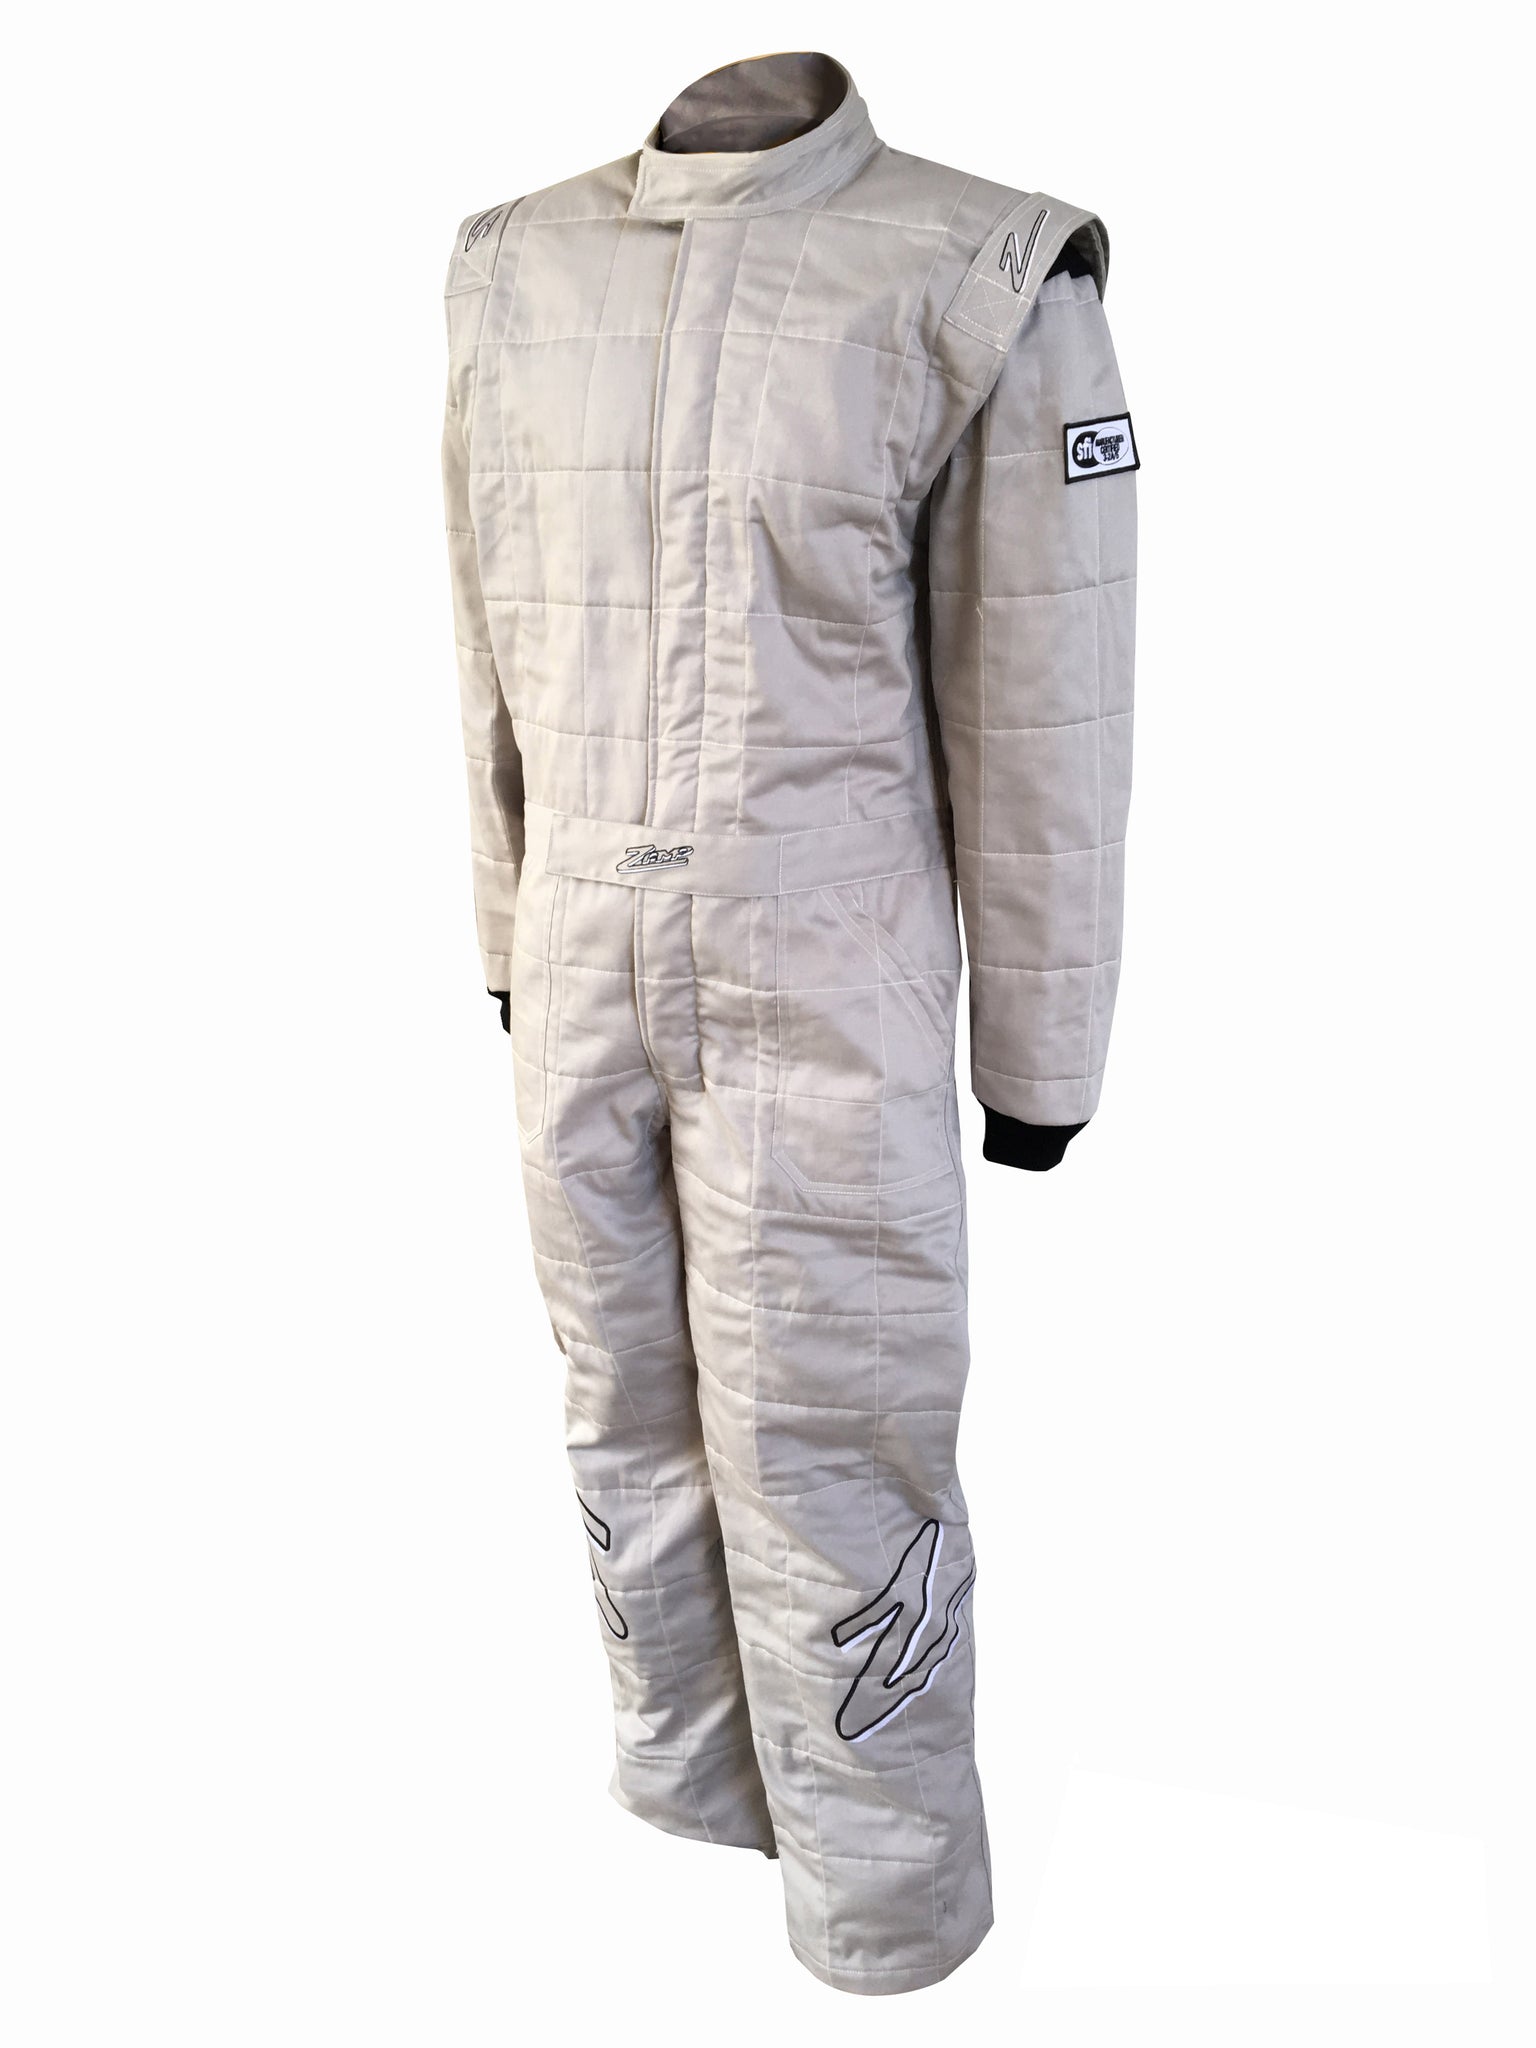 Zamp ZR-30 Race Suit, SFI 3.2A/5